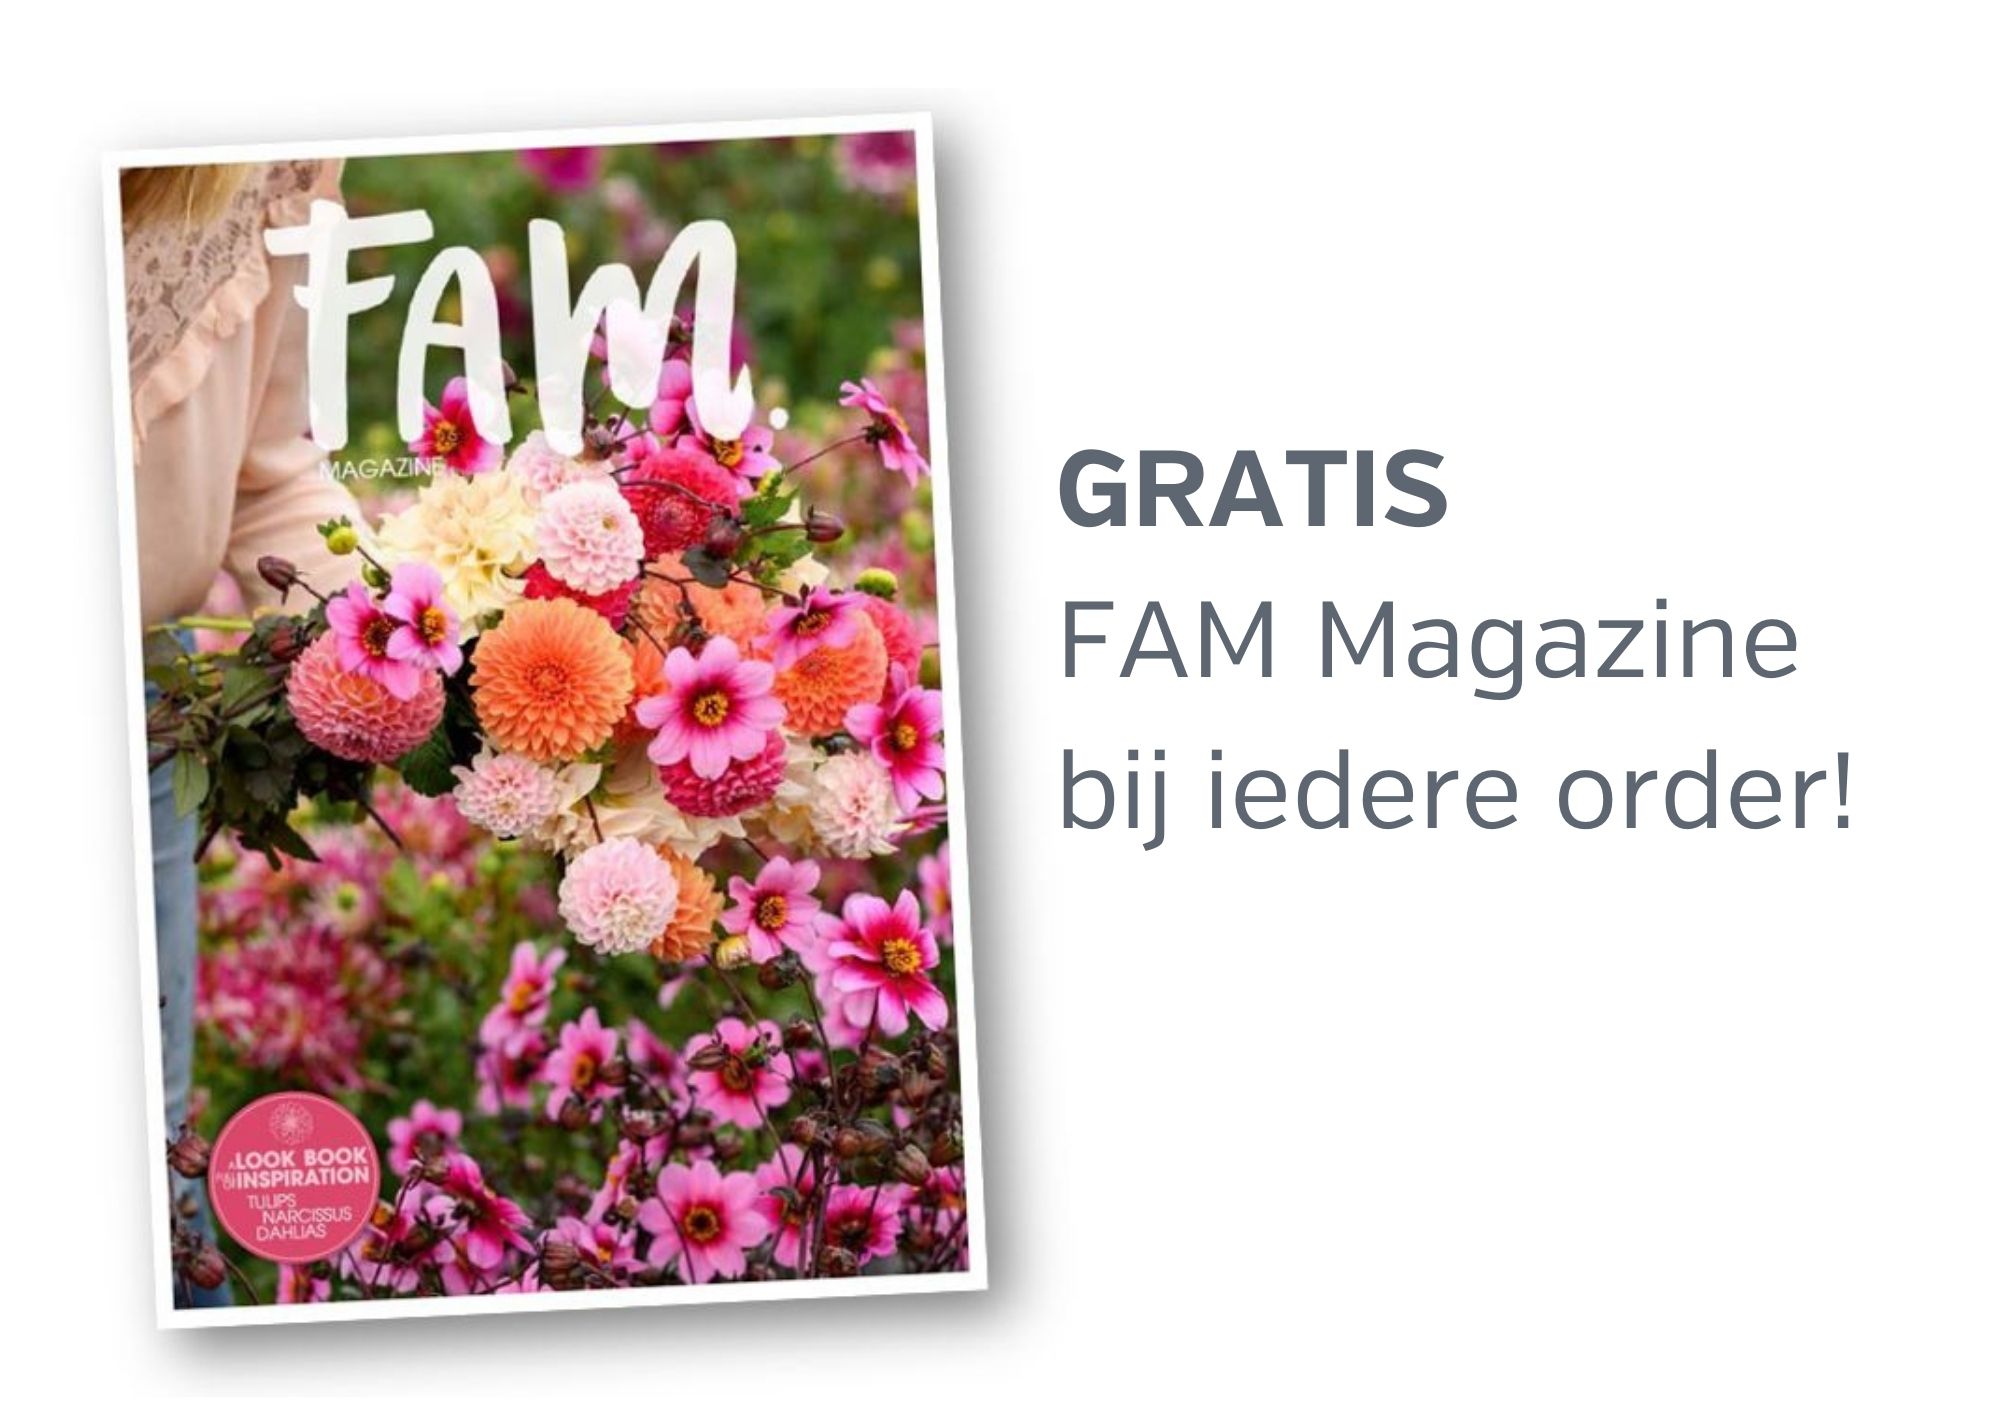 Gratis FAM magazine